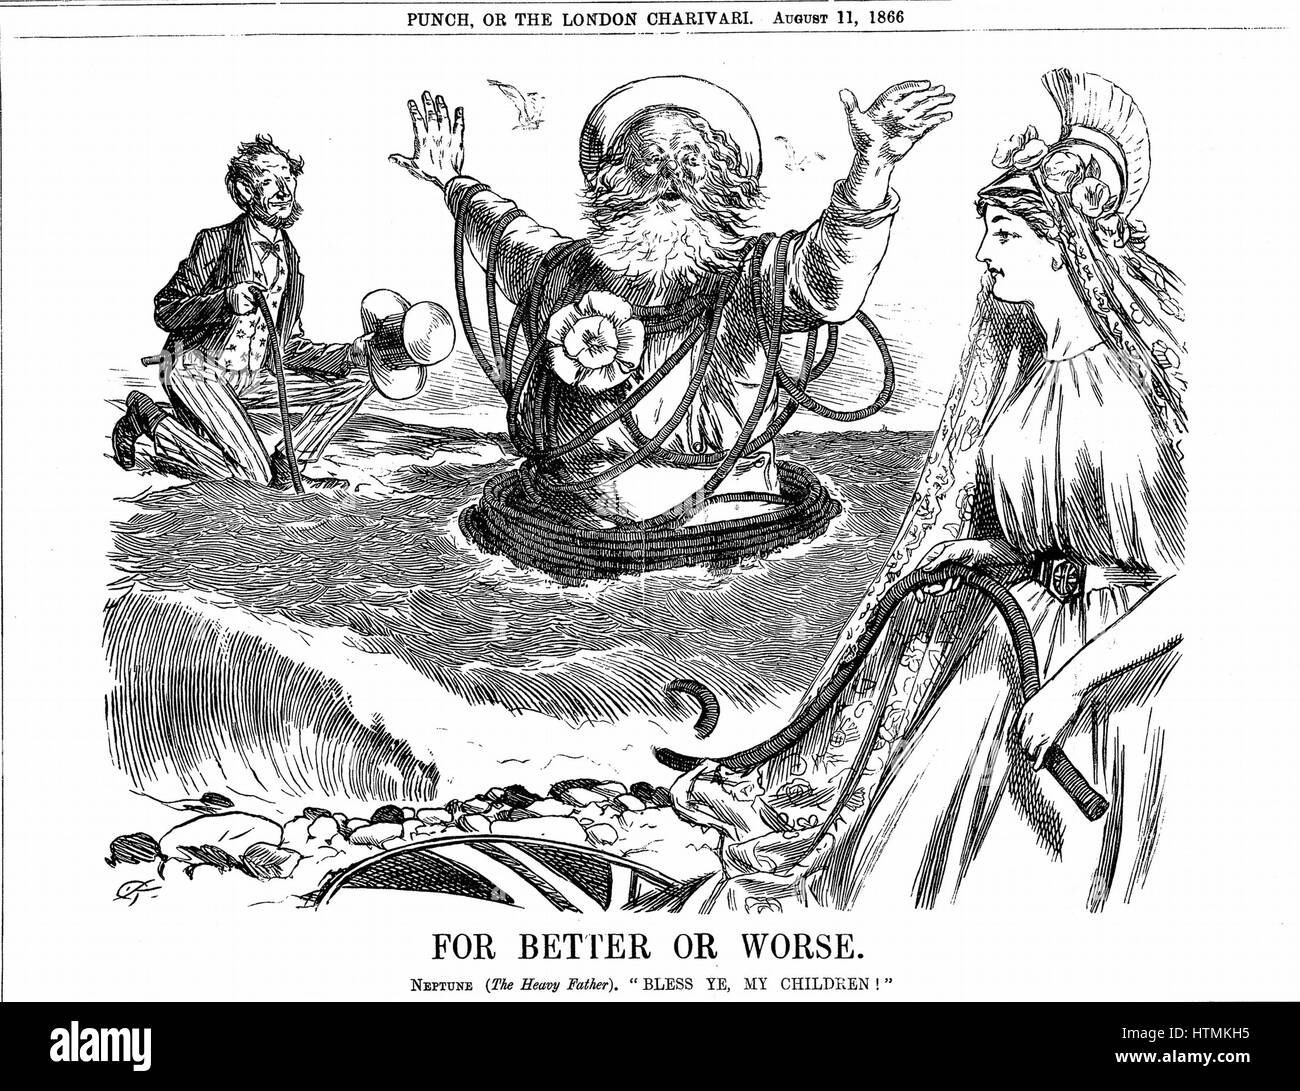 Atlantic Telegraph : Père Neptune Britannia et bénédiction sur l'Oncle Sam la réussite d'un câble télégraphique de l'Atlantique. Cartoon 'Punch' London 11 Août 1866 Banque D'Images